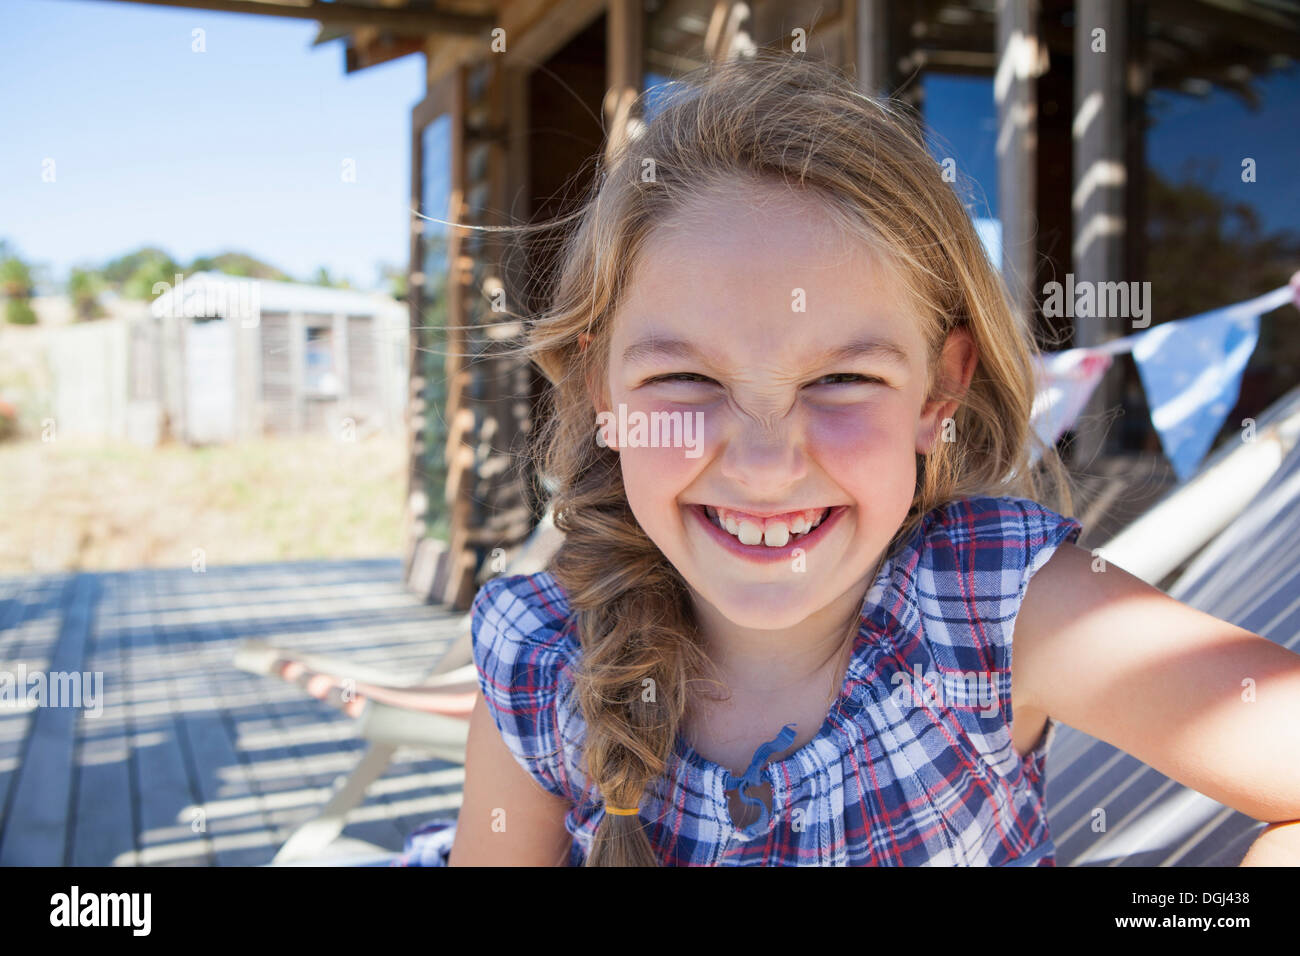 Ritratto di una ragazza che indossa controllato camicetta, sorridente Foto Stock